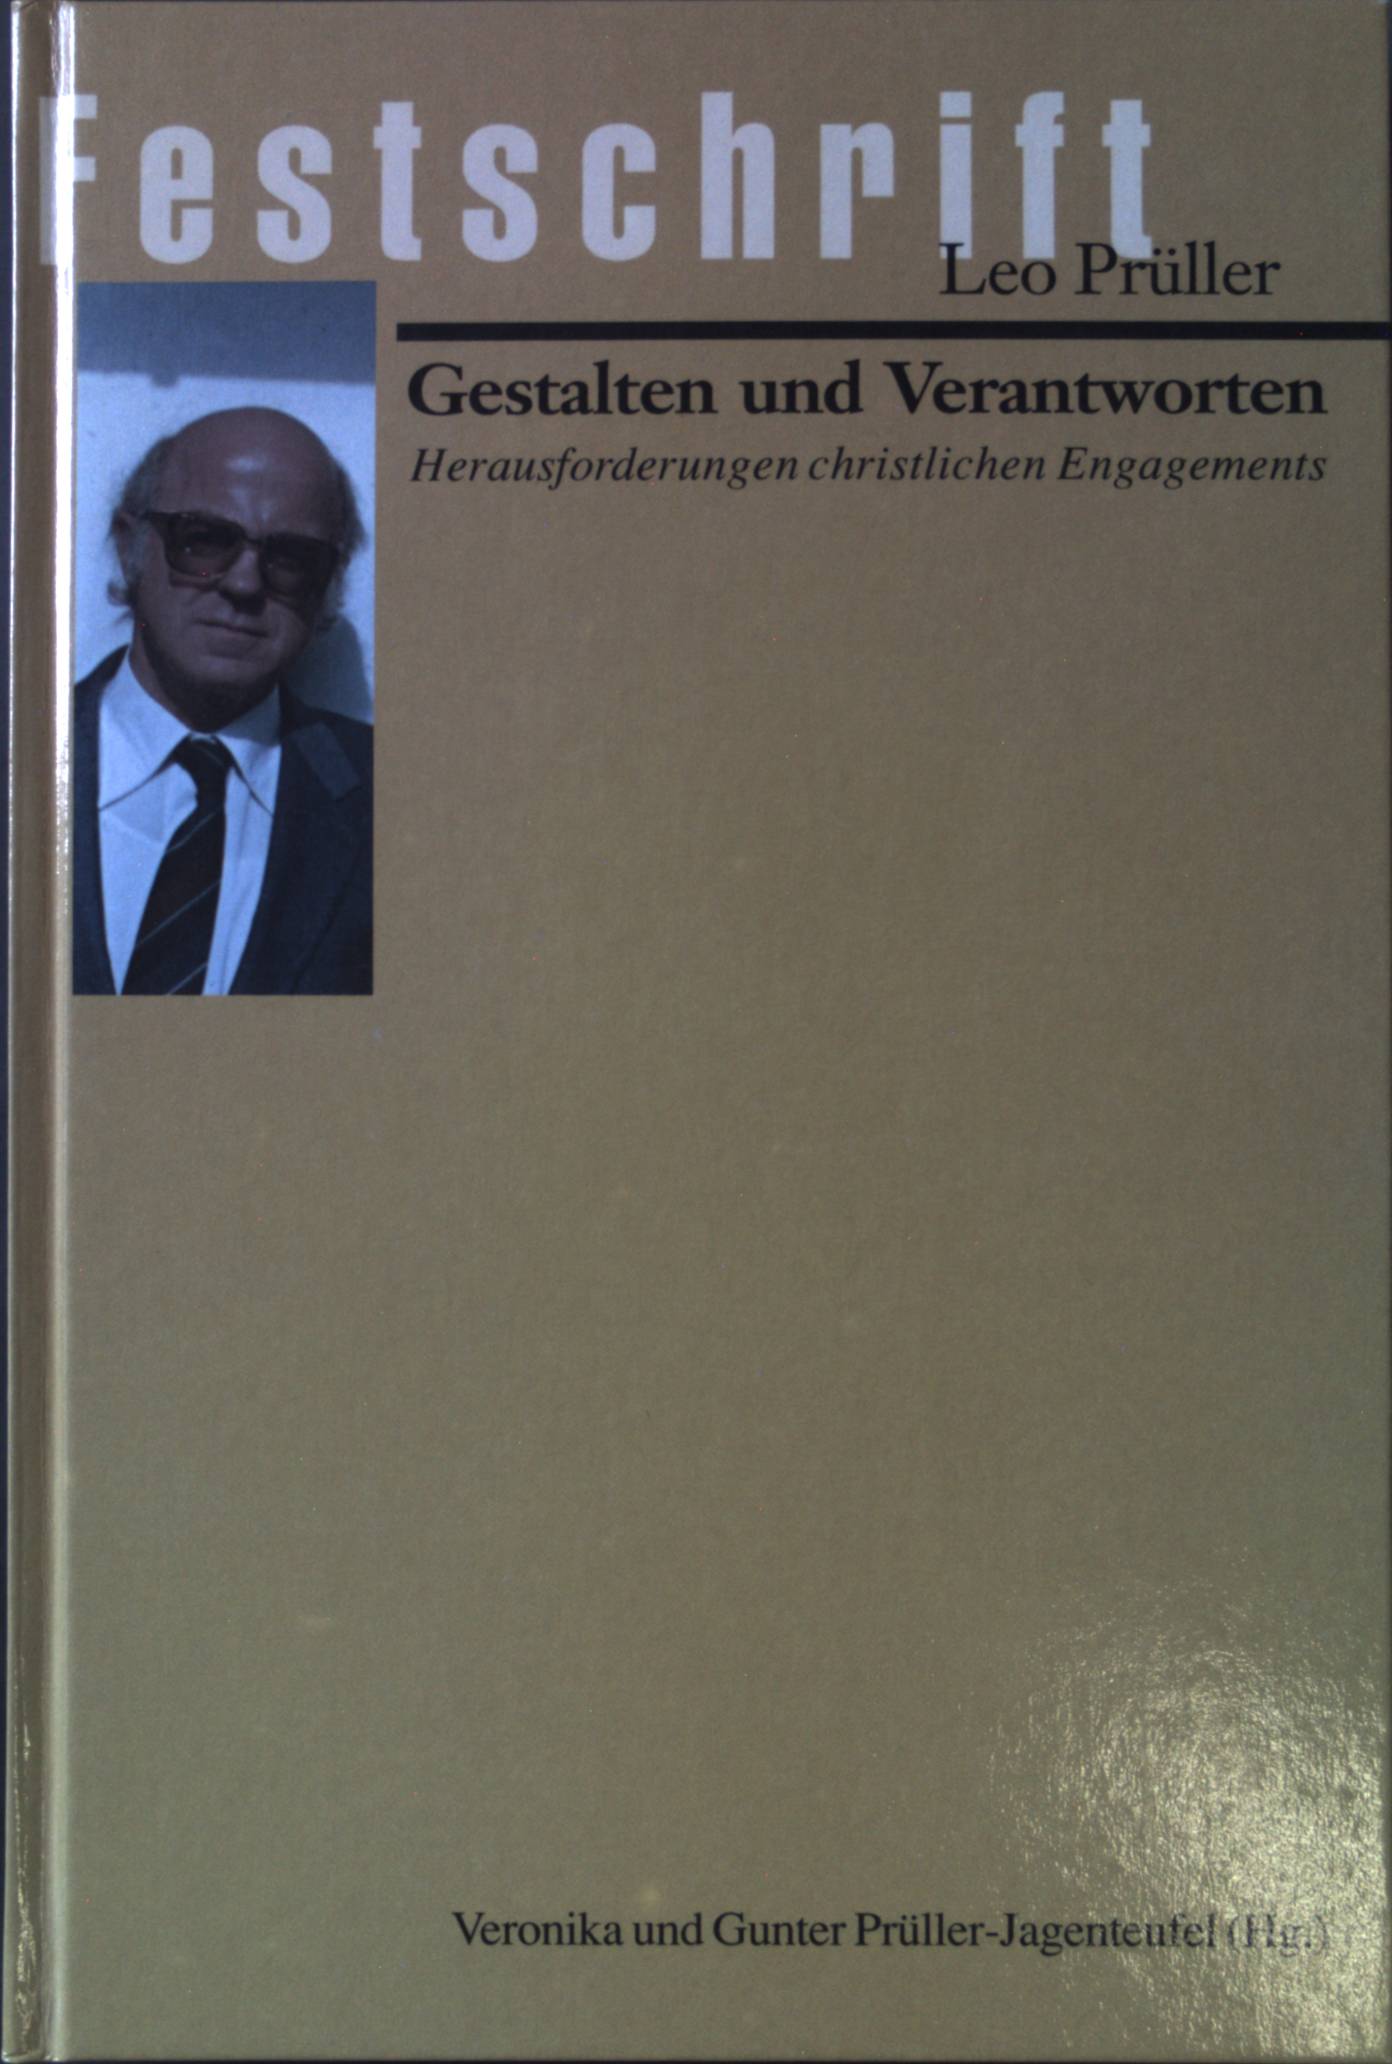 Gestalten und Verantworten : alte und neue Herausforderungen christlichen Engagements ; Festschrift für Leo Prüller. - Prüller-Jagenteufel, Veronika